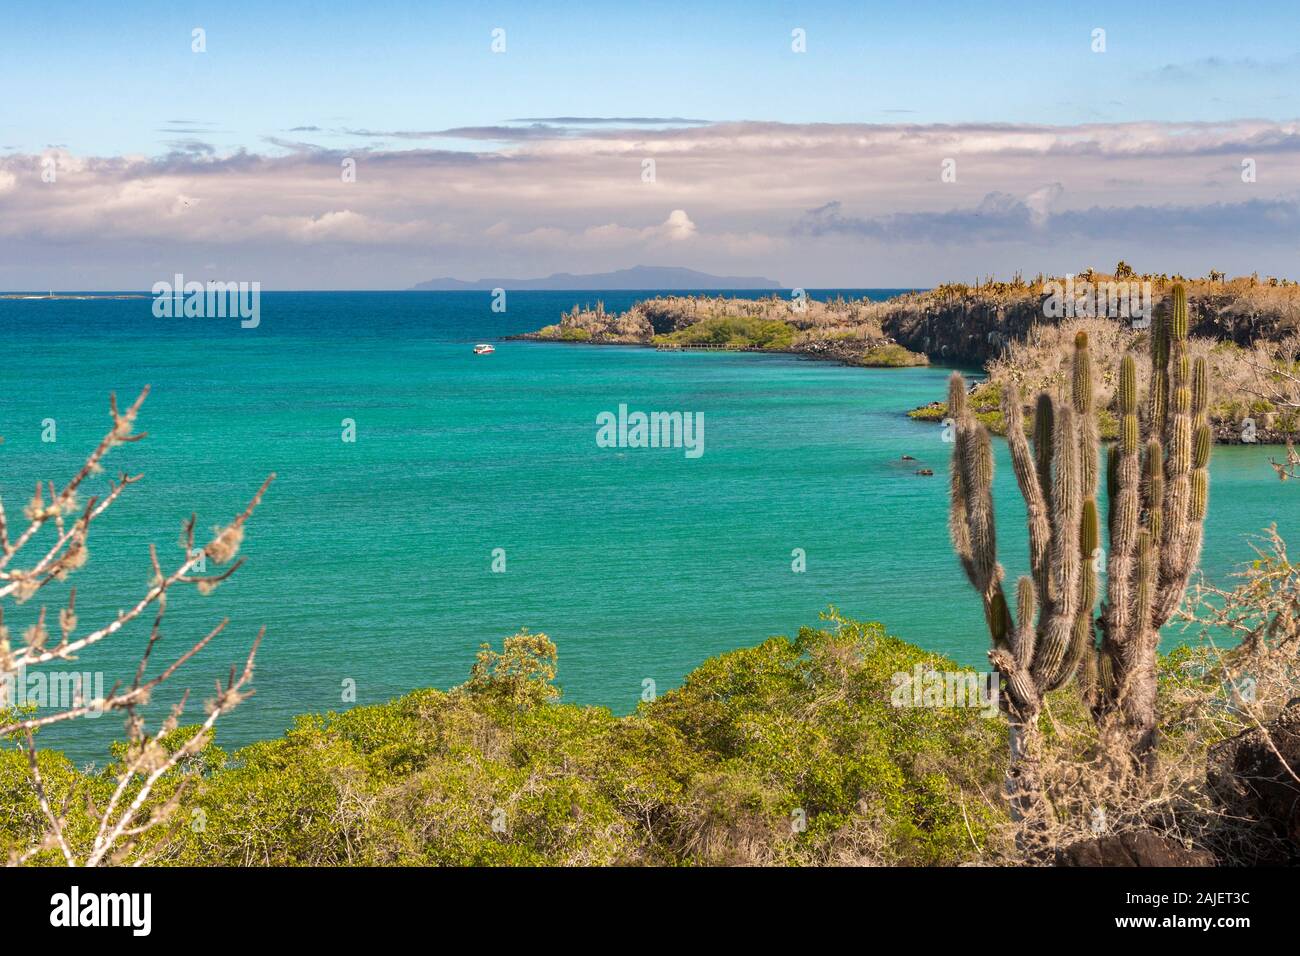 Franklin Bay, Santa Cruz island, Galapagos, Ecuador. Stock Photo